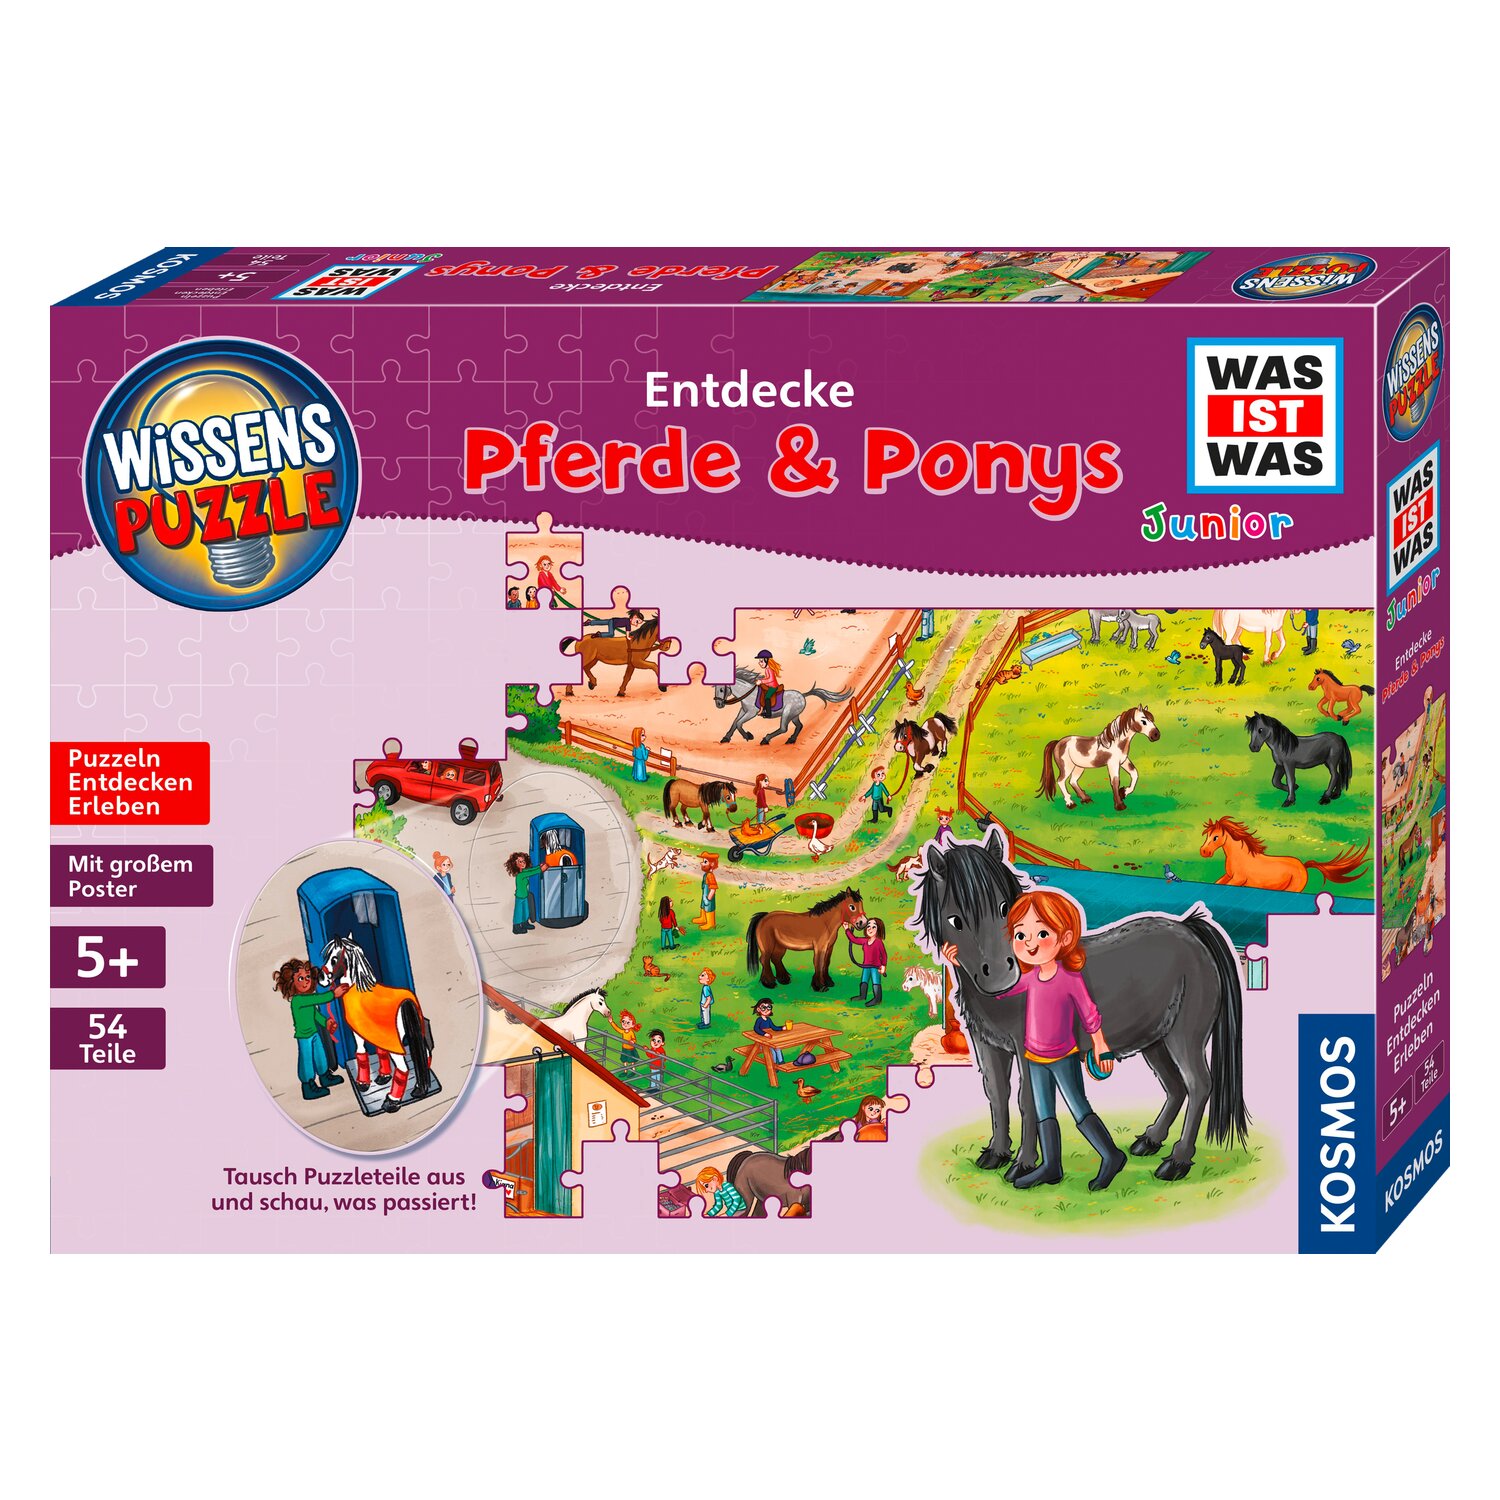 WAS IST WAS Junior Puzzle Pferde & Ponys 